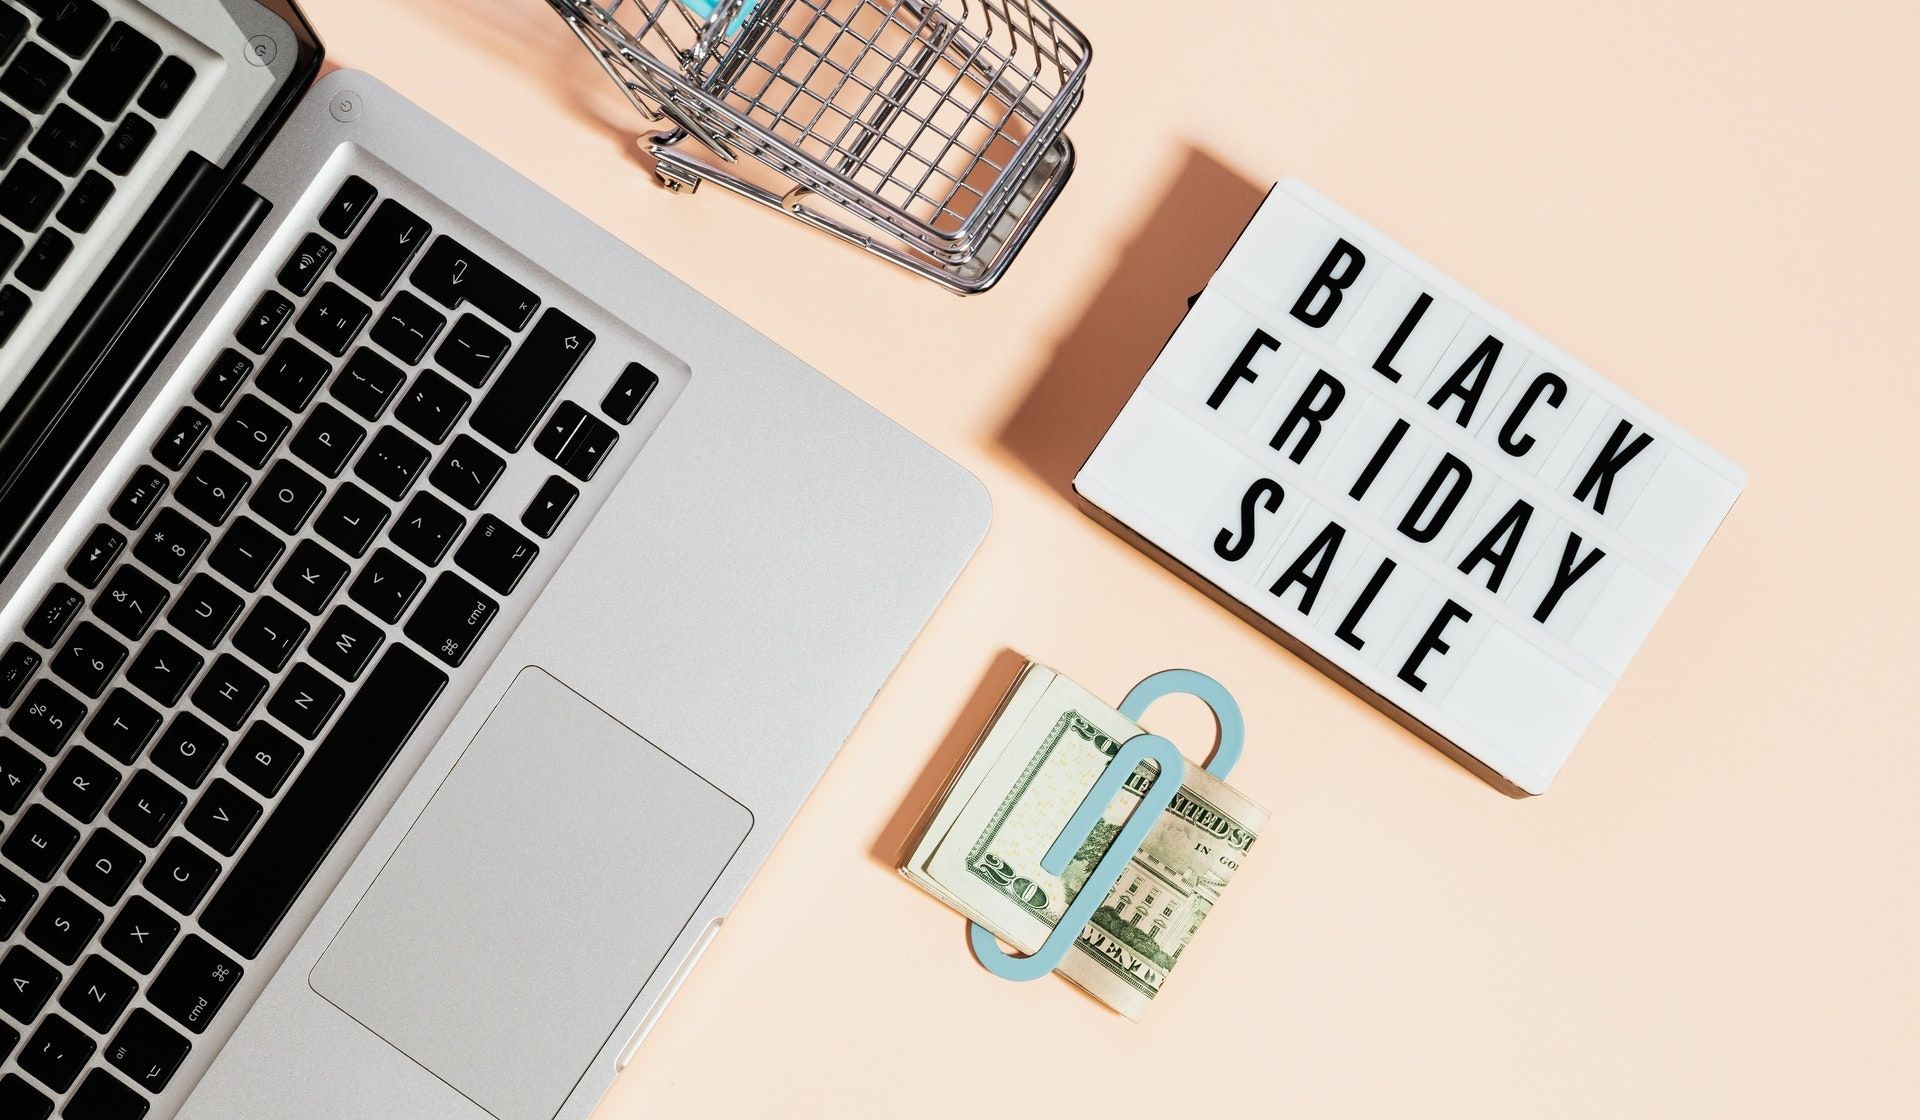 Zdjęcie laptopa, banknotów i znaku "Black Friday Sale"